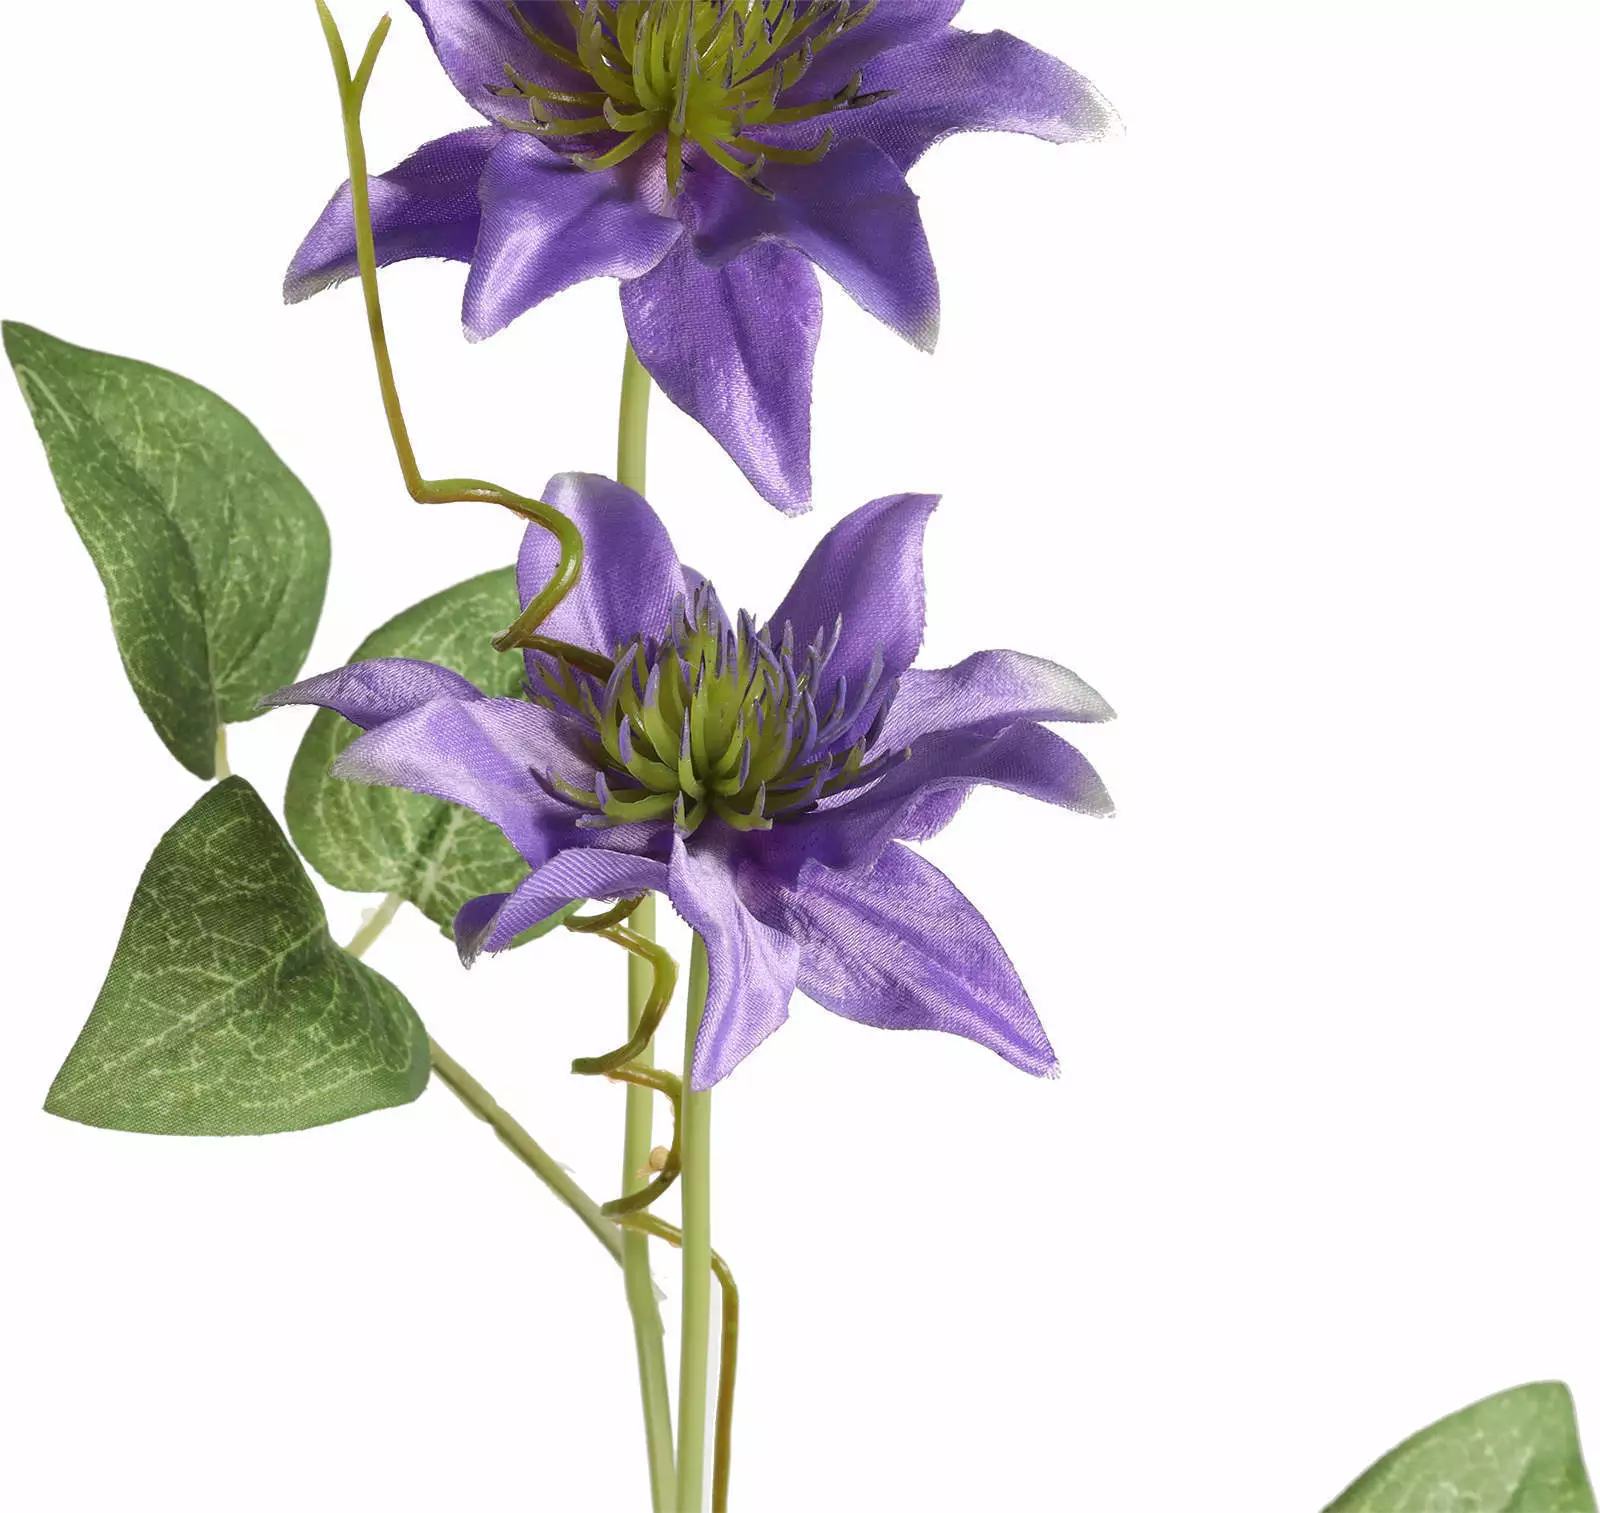 Clematis Flower details